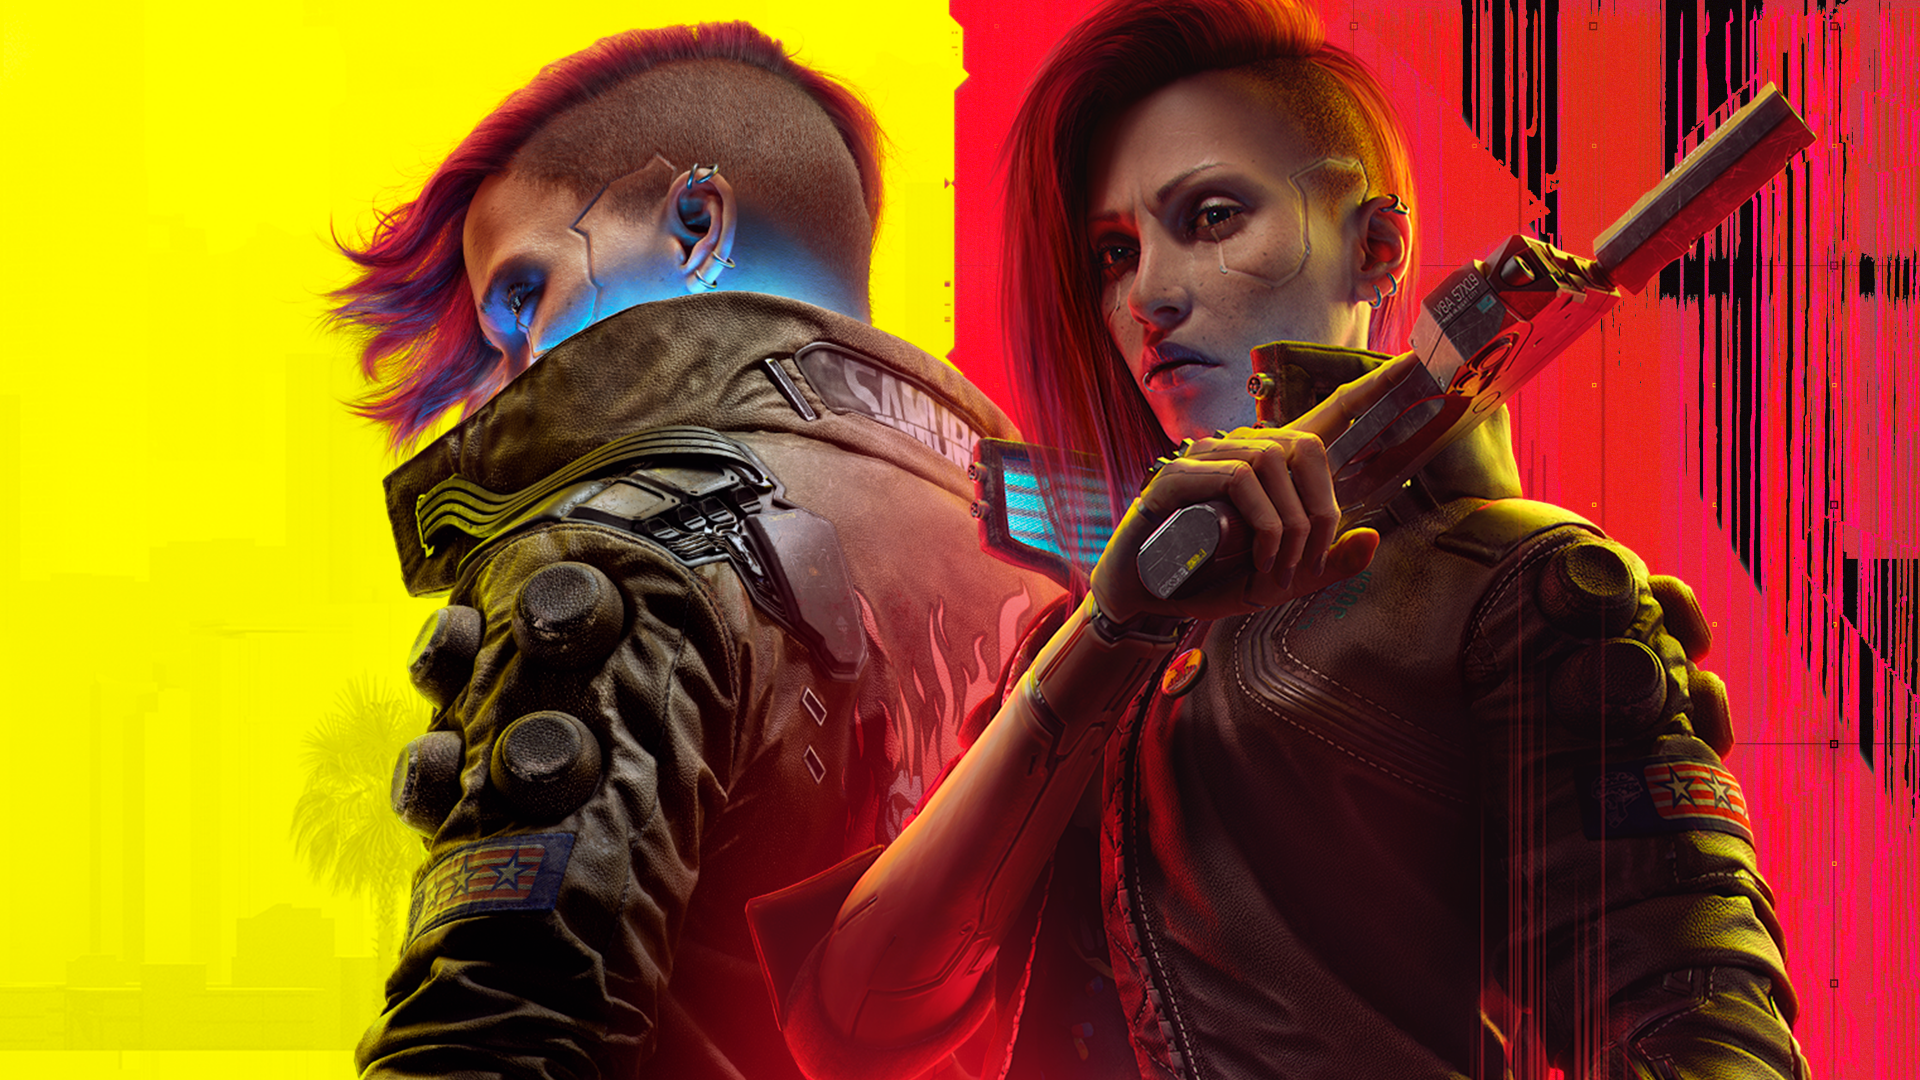 Download wallpaper: Cyberpunk 2077 gameplay 1366x768